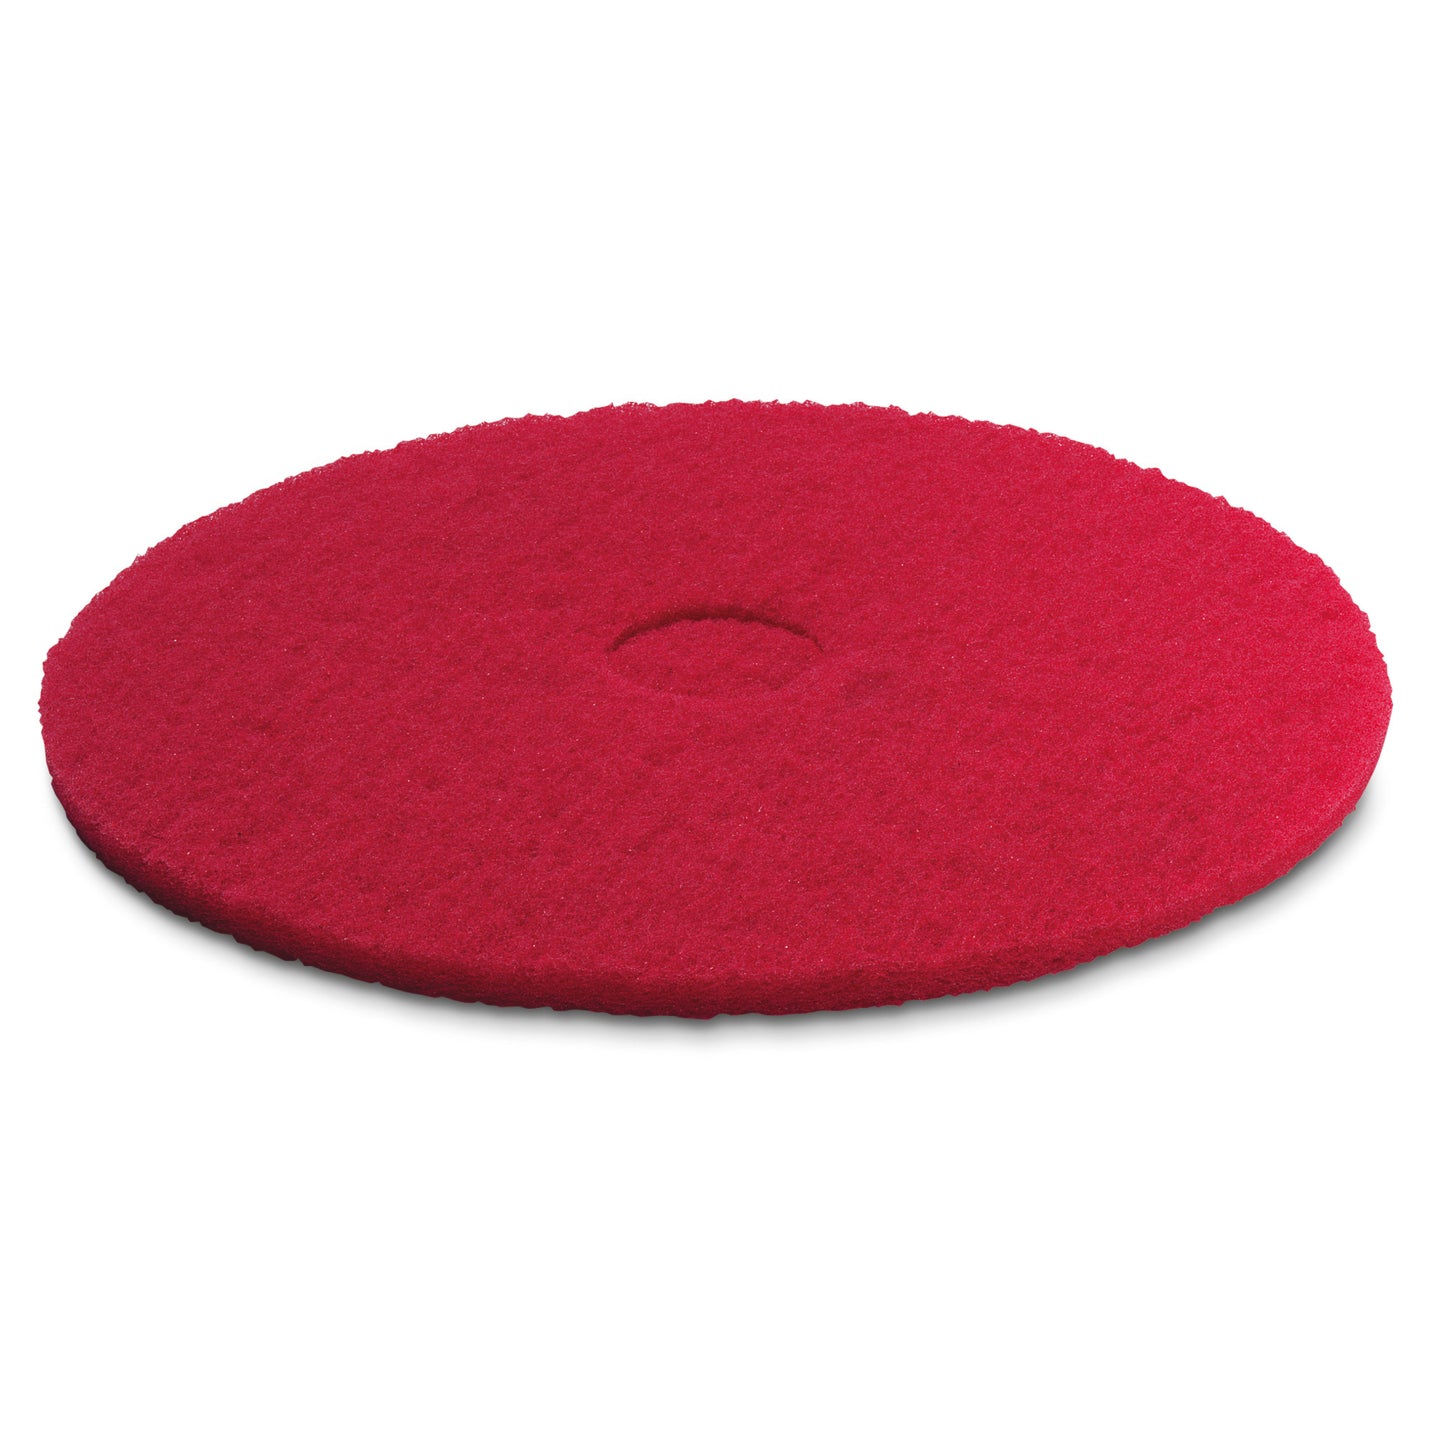 Kärcher Rondeller, Medium-mjuk, Röd, 381 mm